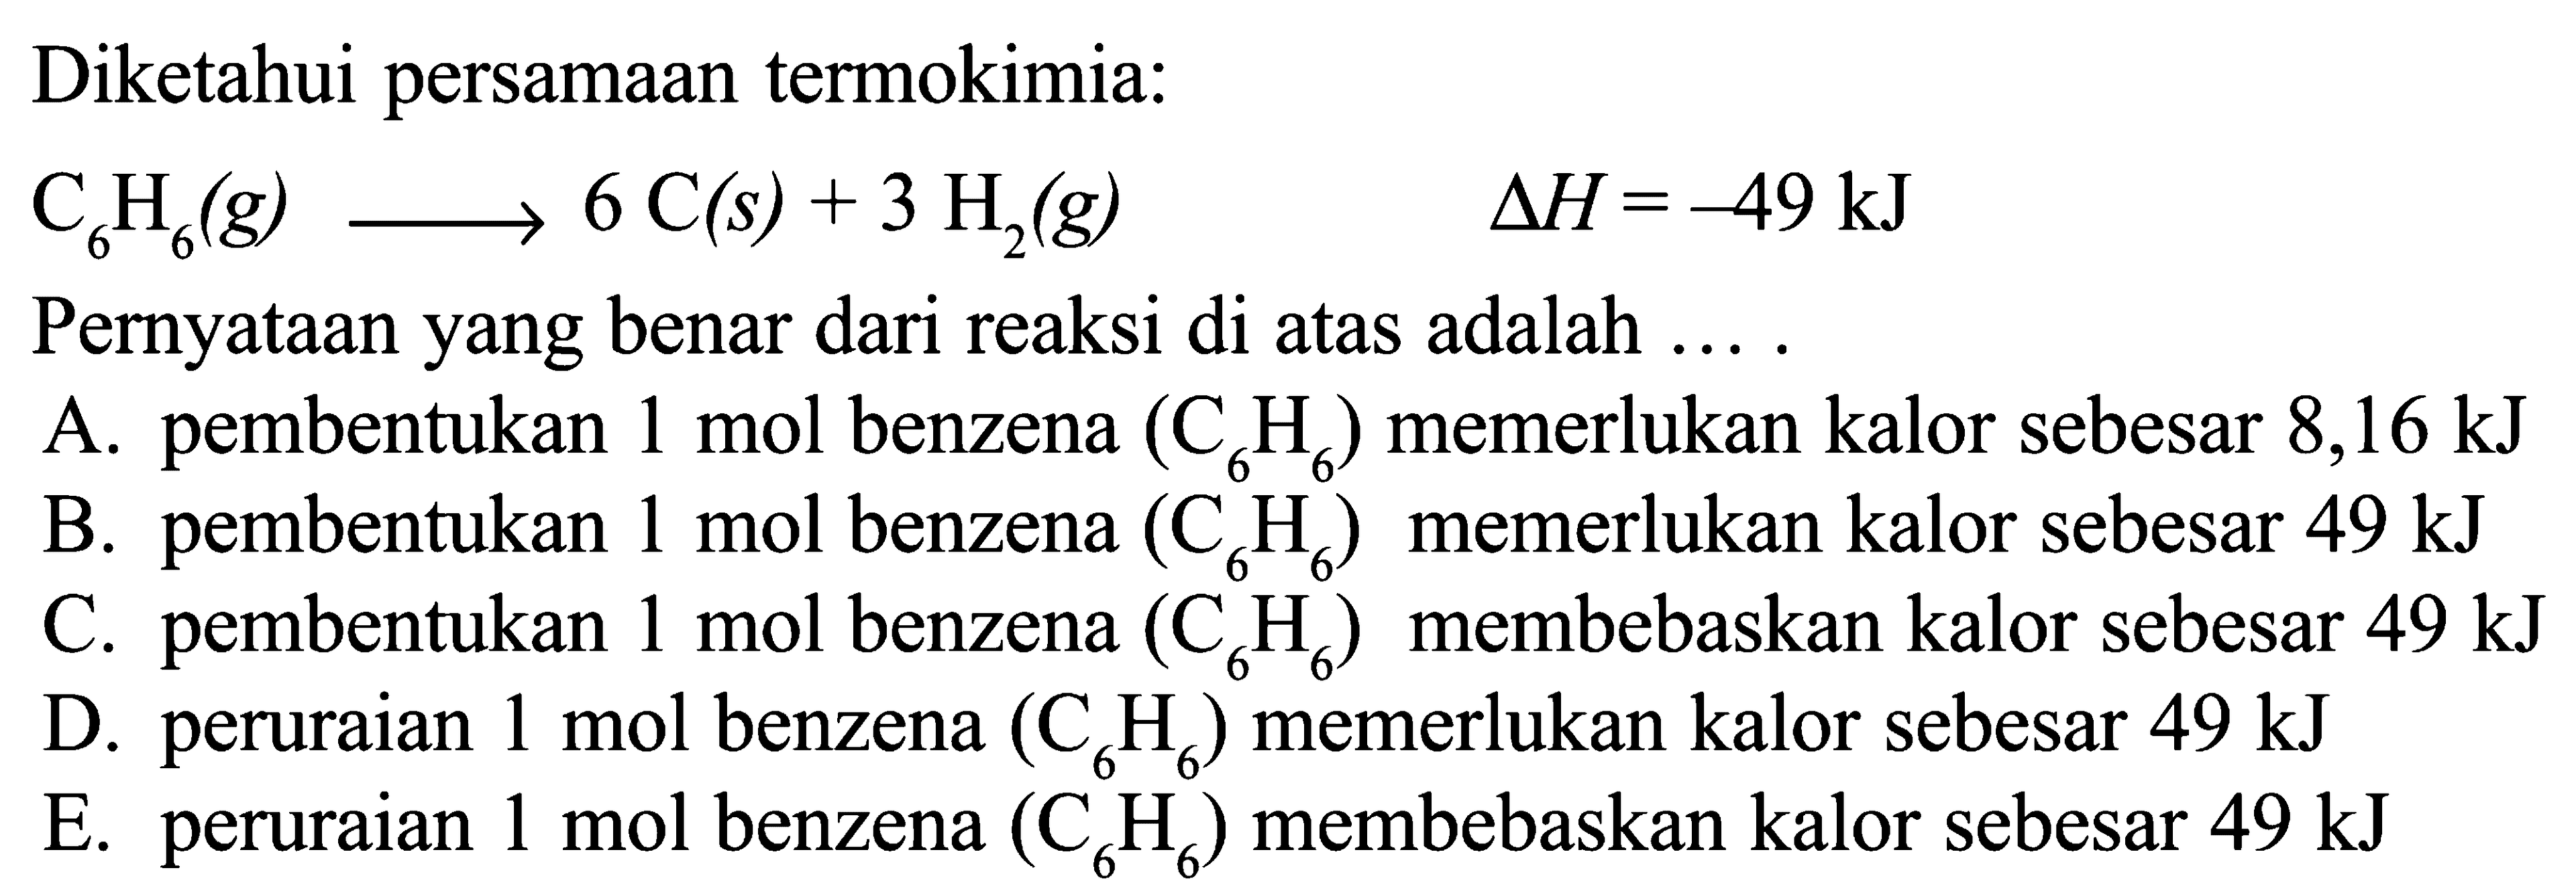 Diketahui persamaan termokimia: C6H6 (g) -> 6 C(s) + 3 H2 (g) delta H = -49 kJ Pernyataan yang benar dari reaksi di atas adalah...